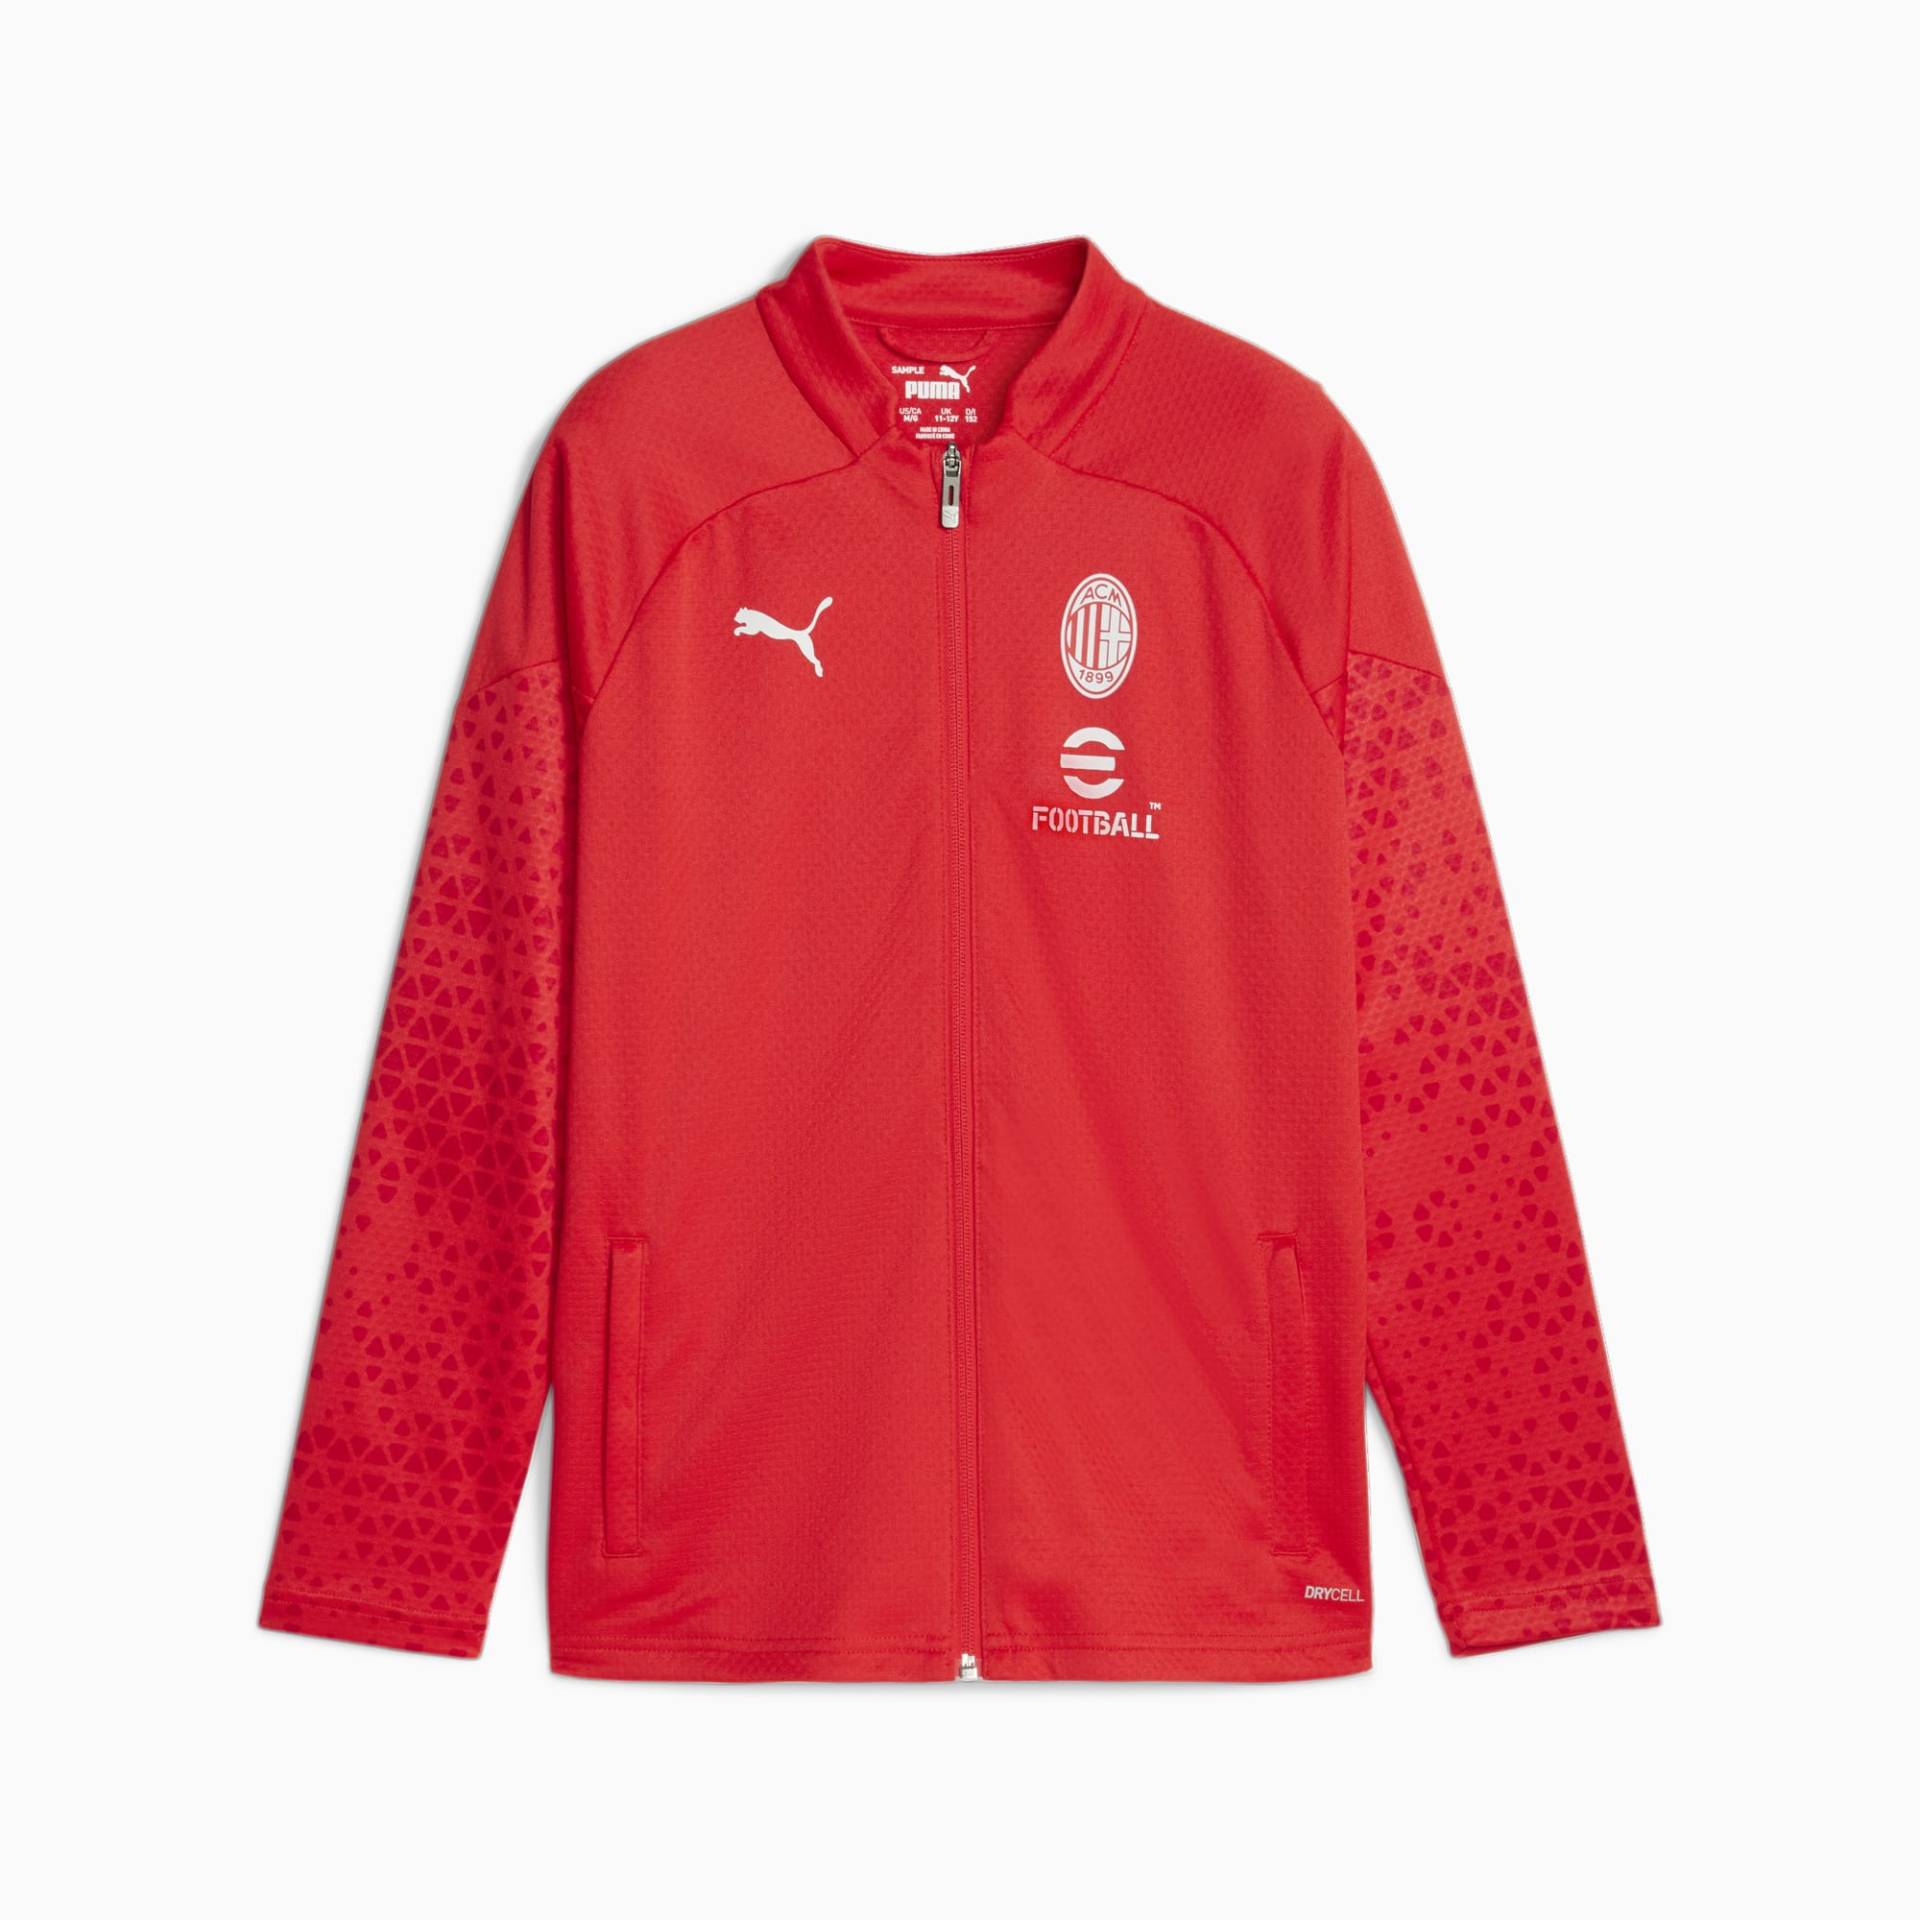 PUMA AC Milan Fußball-Trainingsjacke Teenager Für Kinder, Rot/Grau, Größe: 152, Accessoires von PUMA